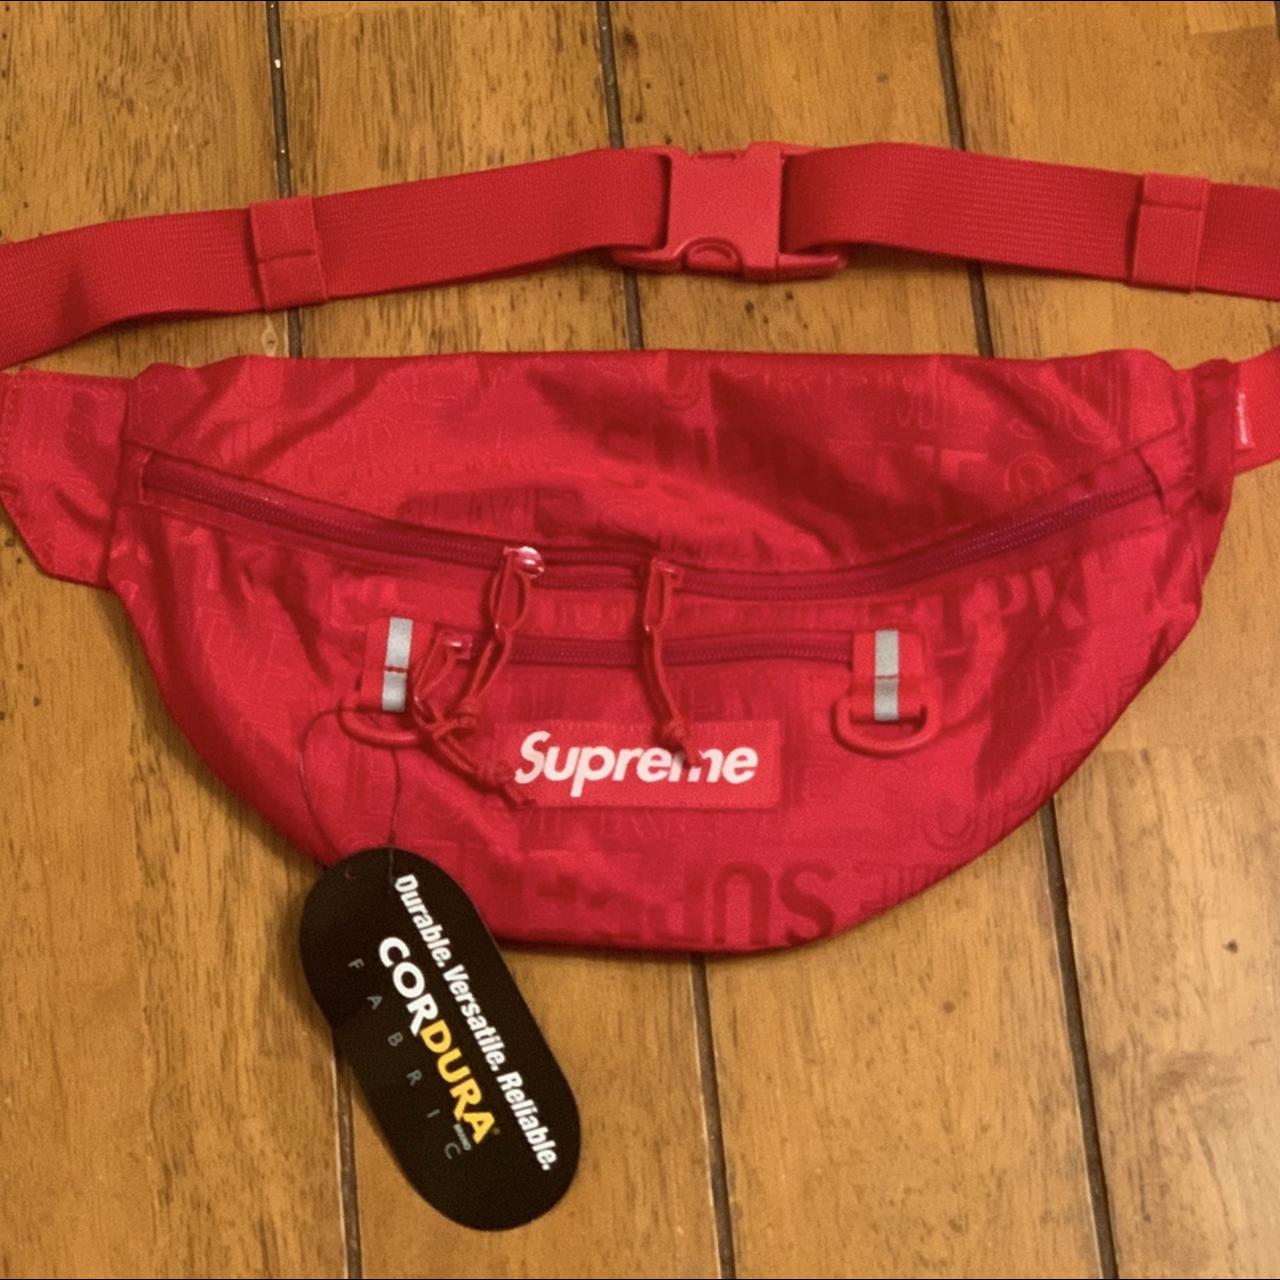 NEW Supreme SS19 Waist Bag - Red